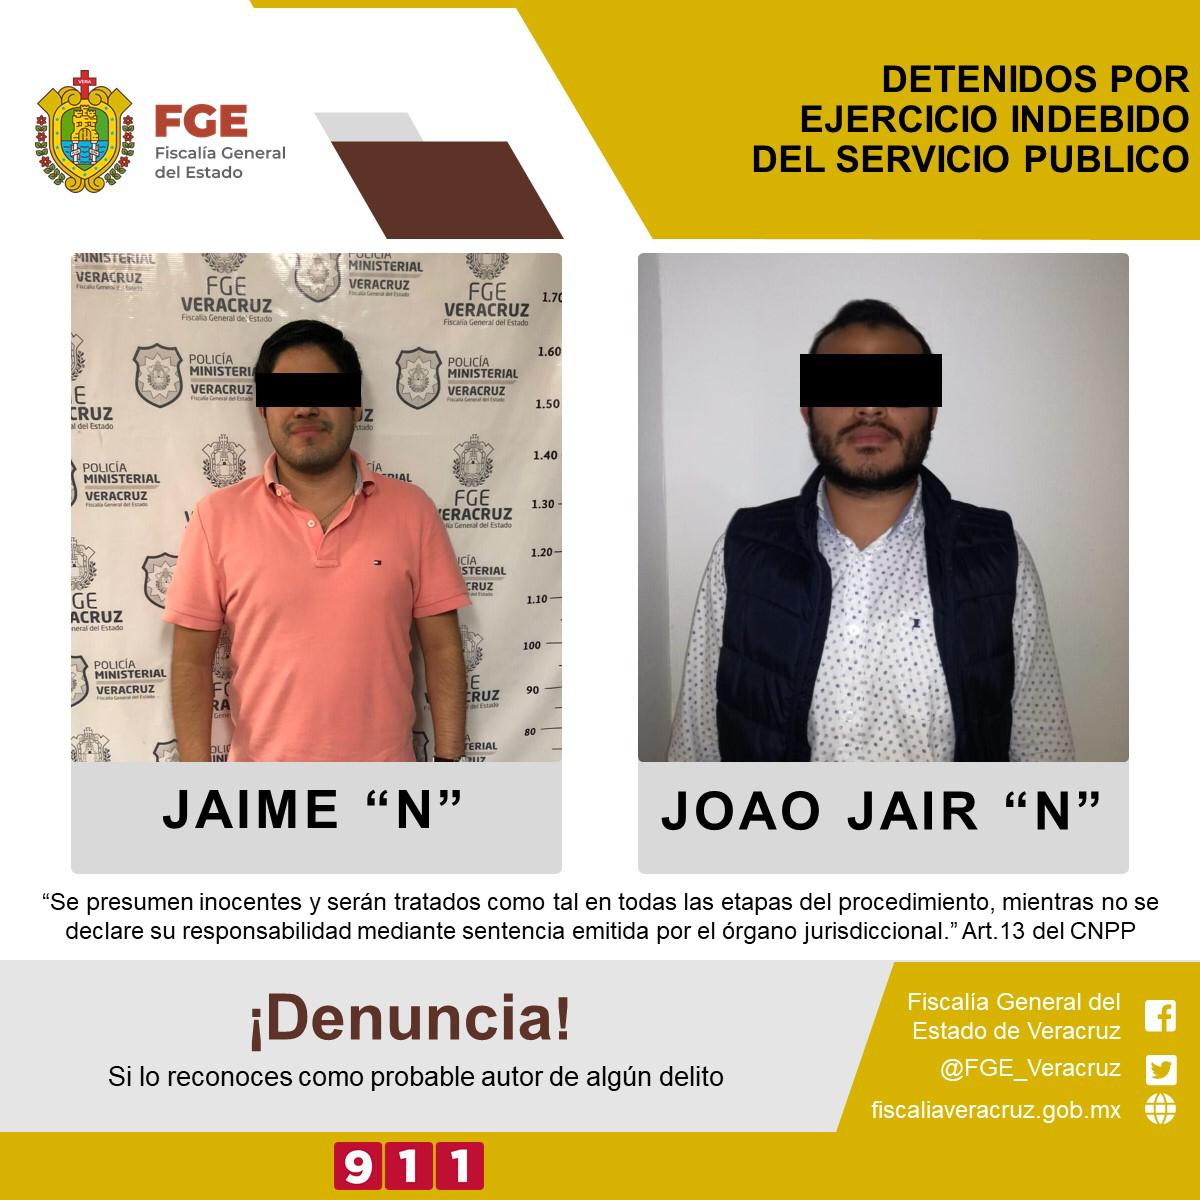 FGE detiene a Jaime “N” y Joao Jaír “N” por presunto ejercicio indebido del servicio público